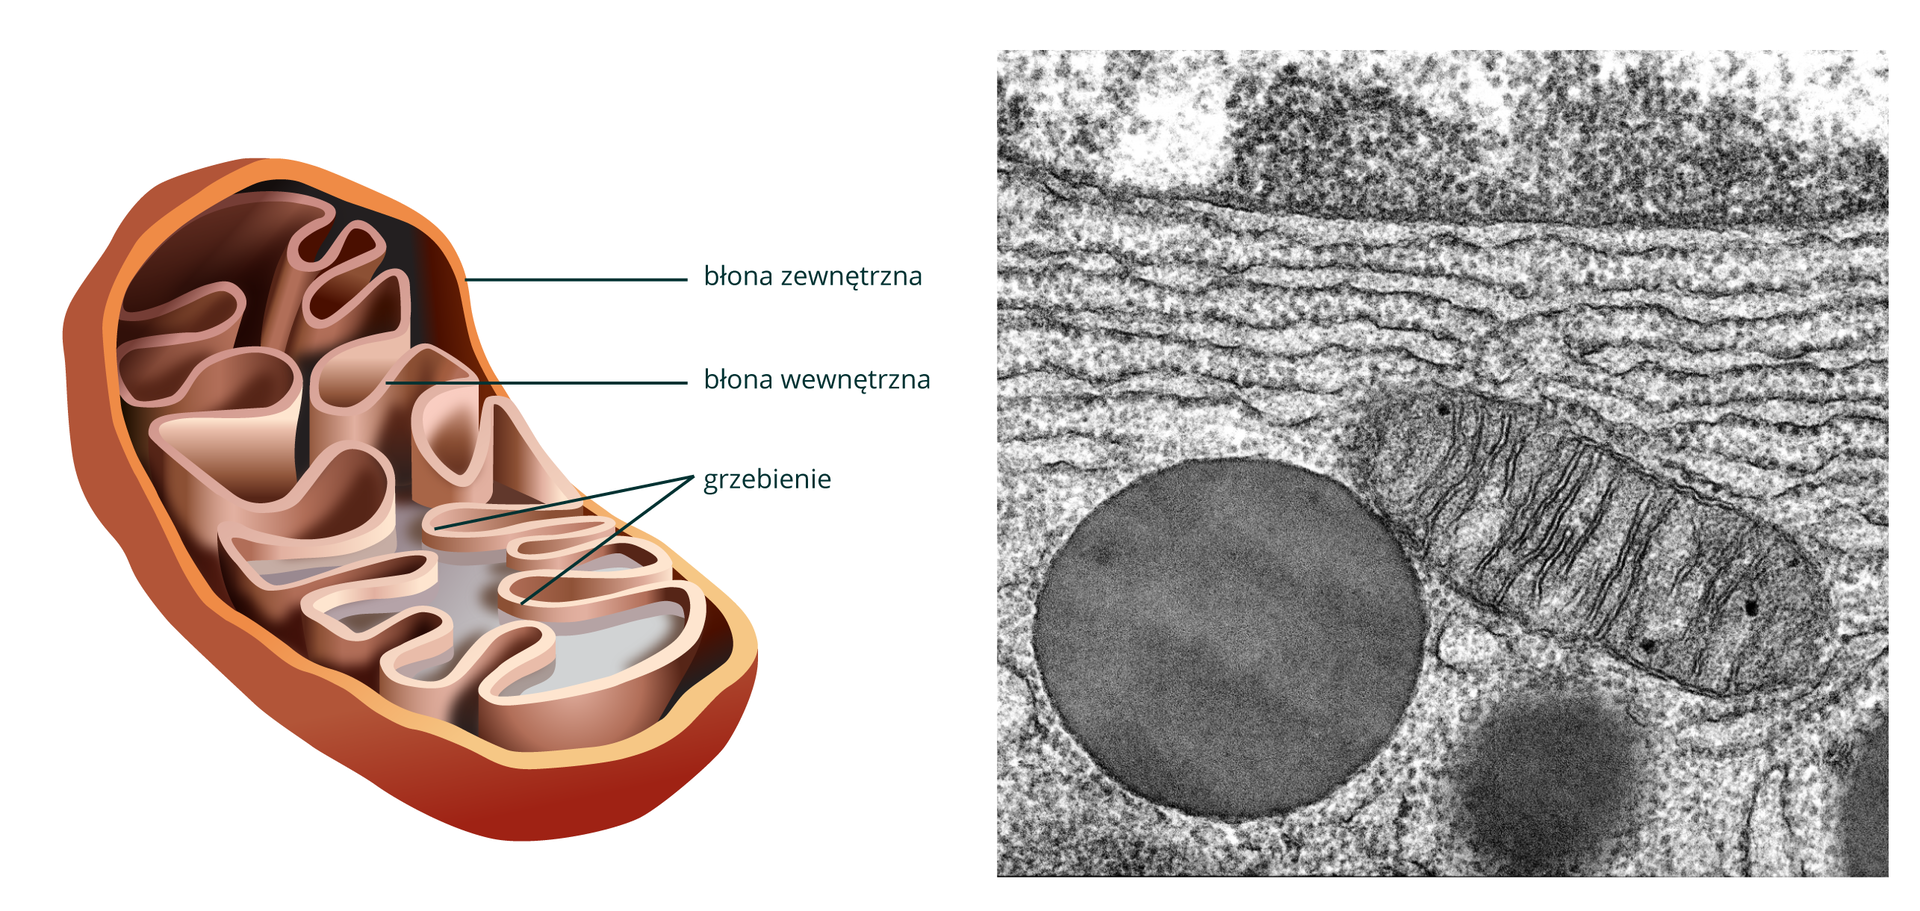 Ilustracja przedstawia przestrzenny wizerunek wnętrza mitochondrium: pałeczka, której ściany tworzą 2 błony - zewnętrzna gładka, wewnętrzna tworzy wpuklenia zwane grzebieniami. Obok obraz mitochondruyn z mikroskopu skaningowego.